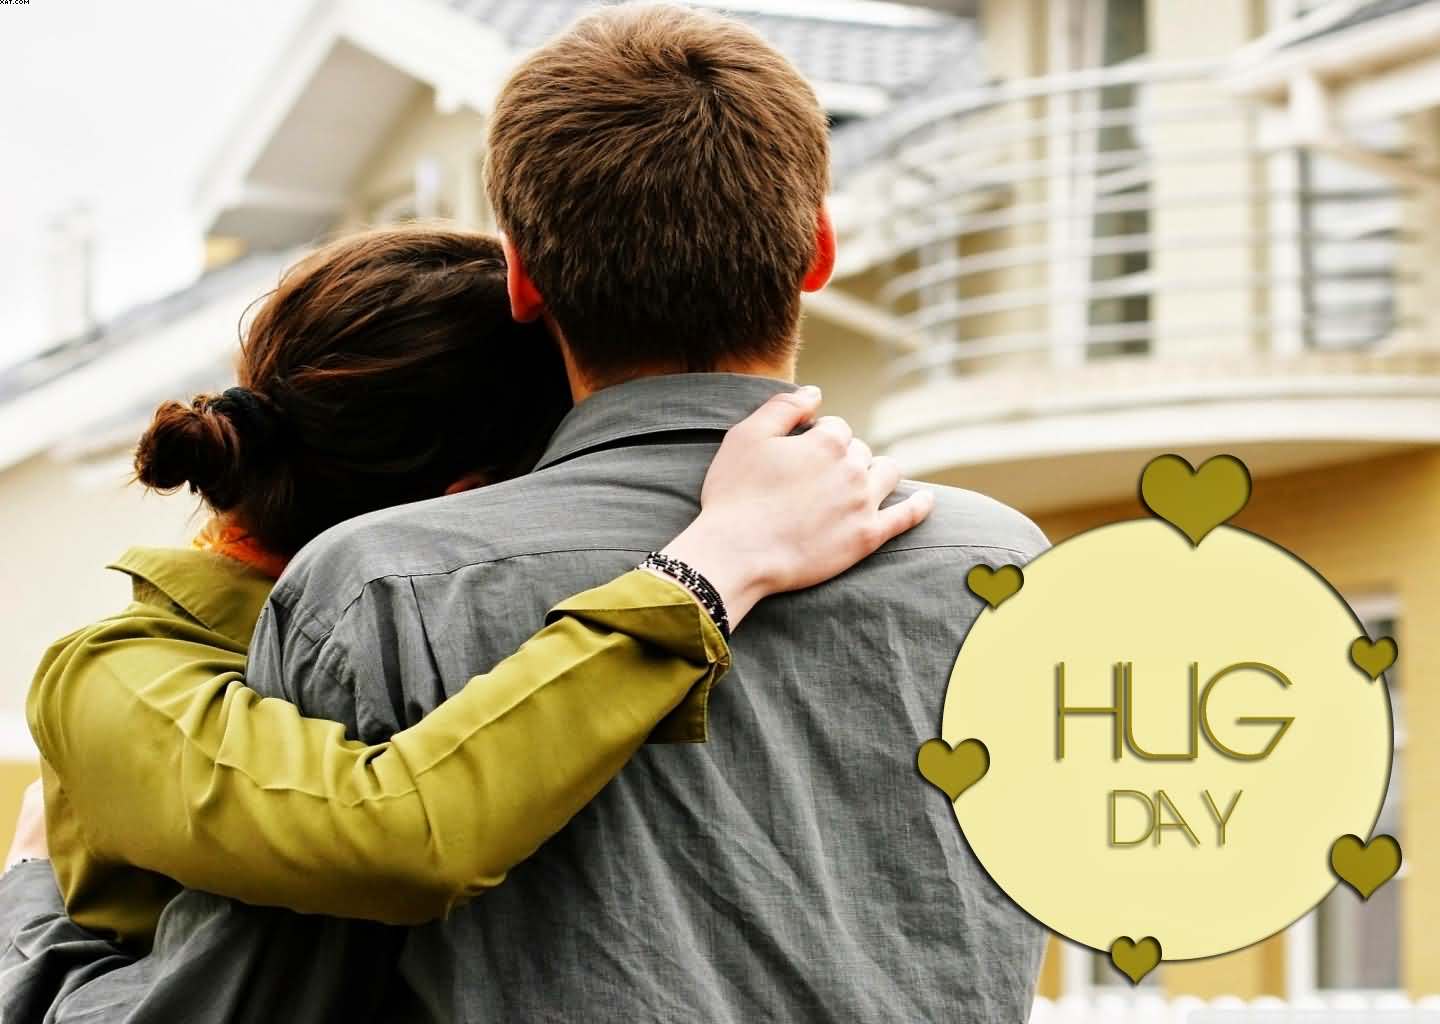 Beautiful couple on Happy Hug Day